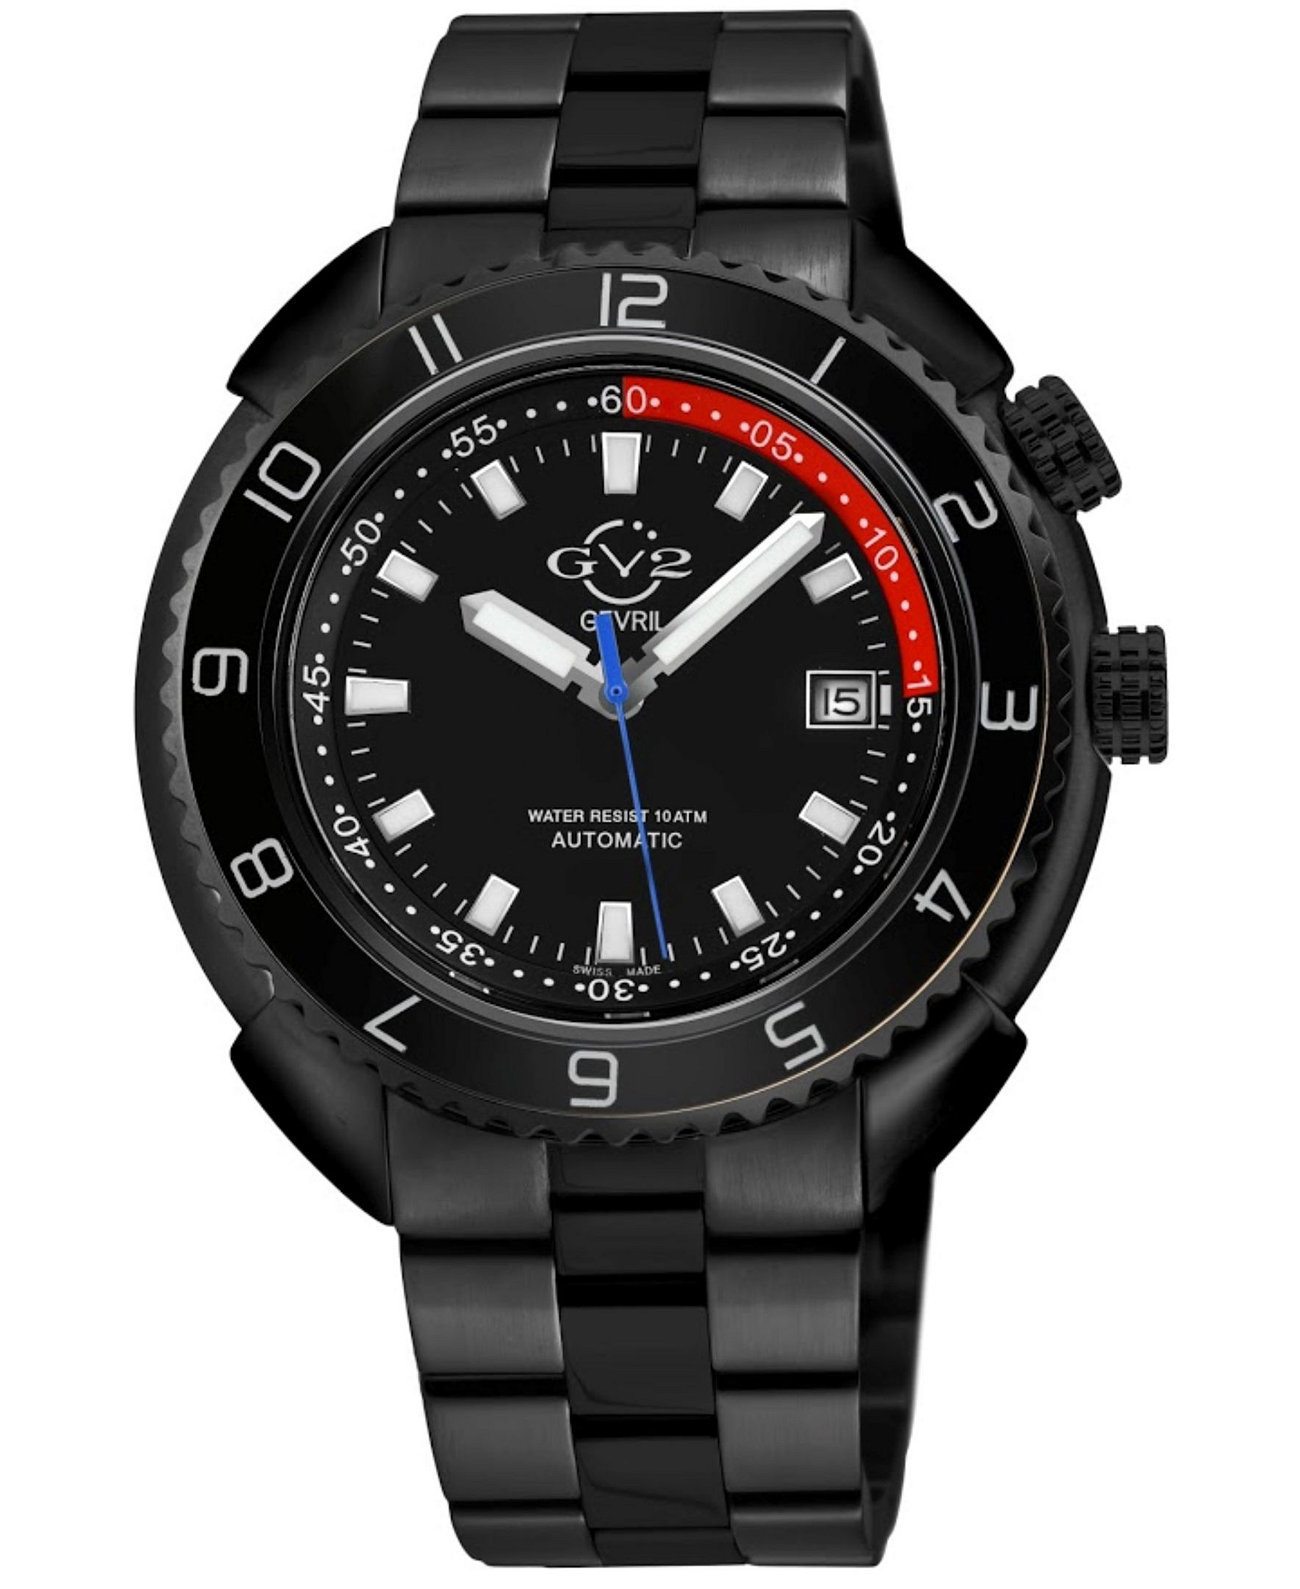 Мужские швейцарские часы с автоматическим браслетом Squalo с черным ионным покрытием GV2, 46 мм Gevril